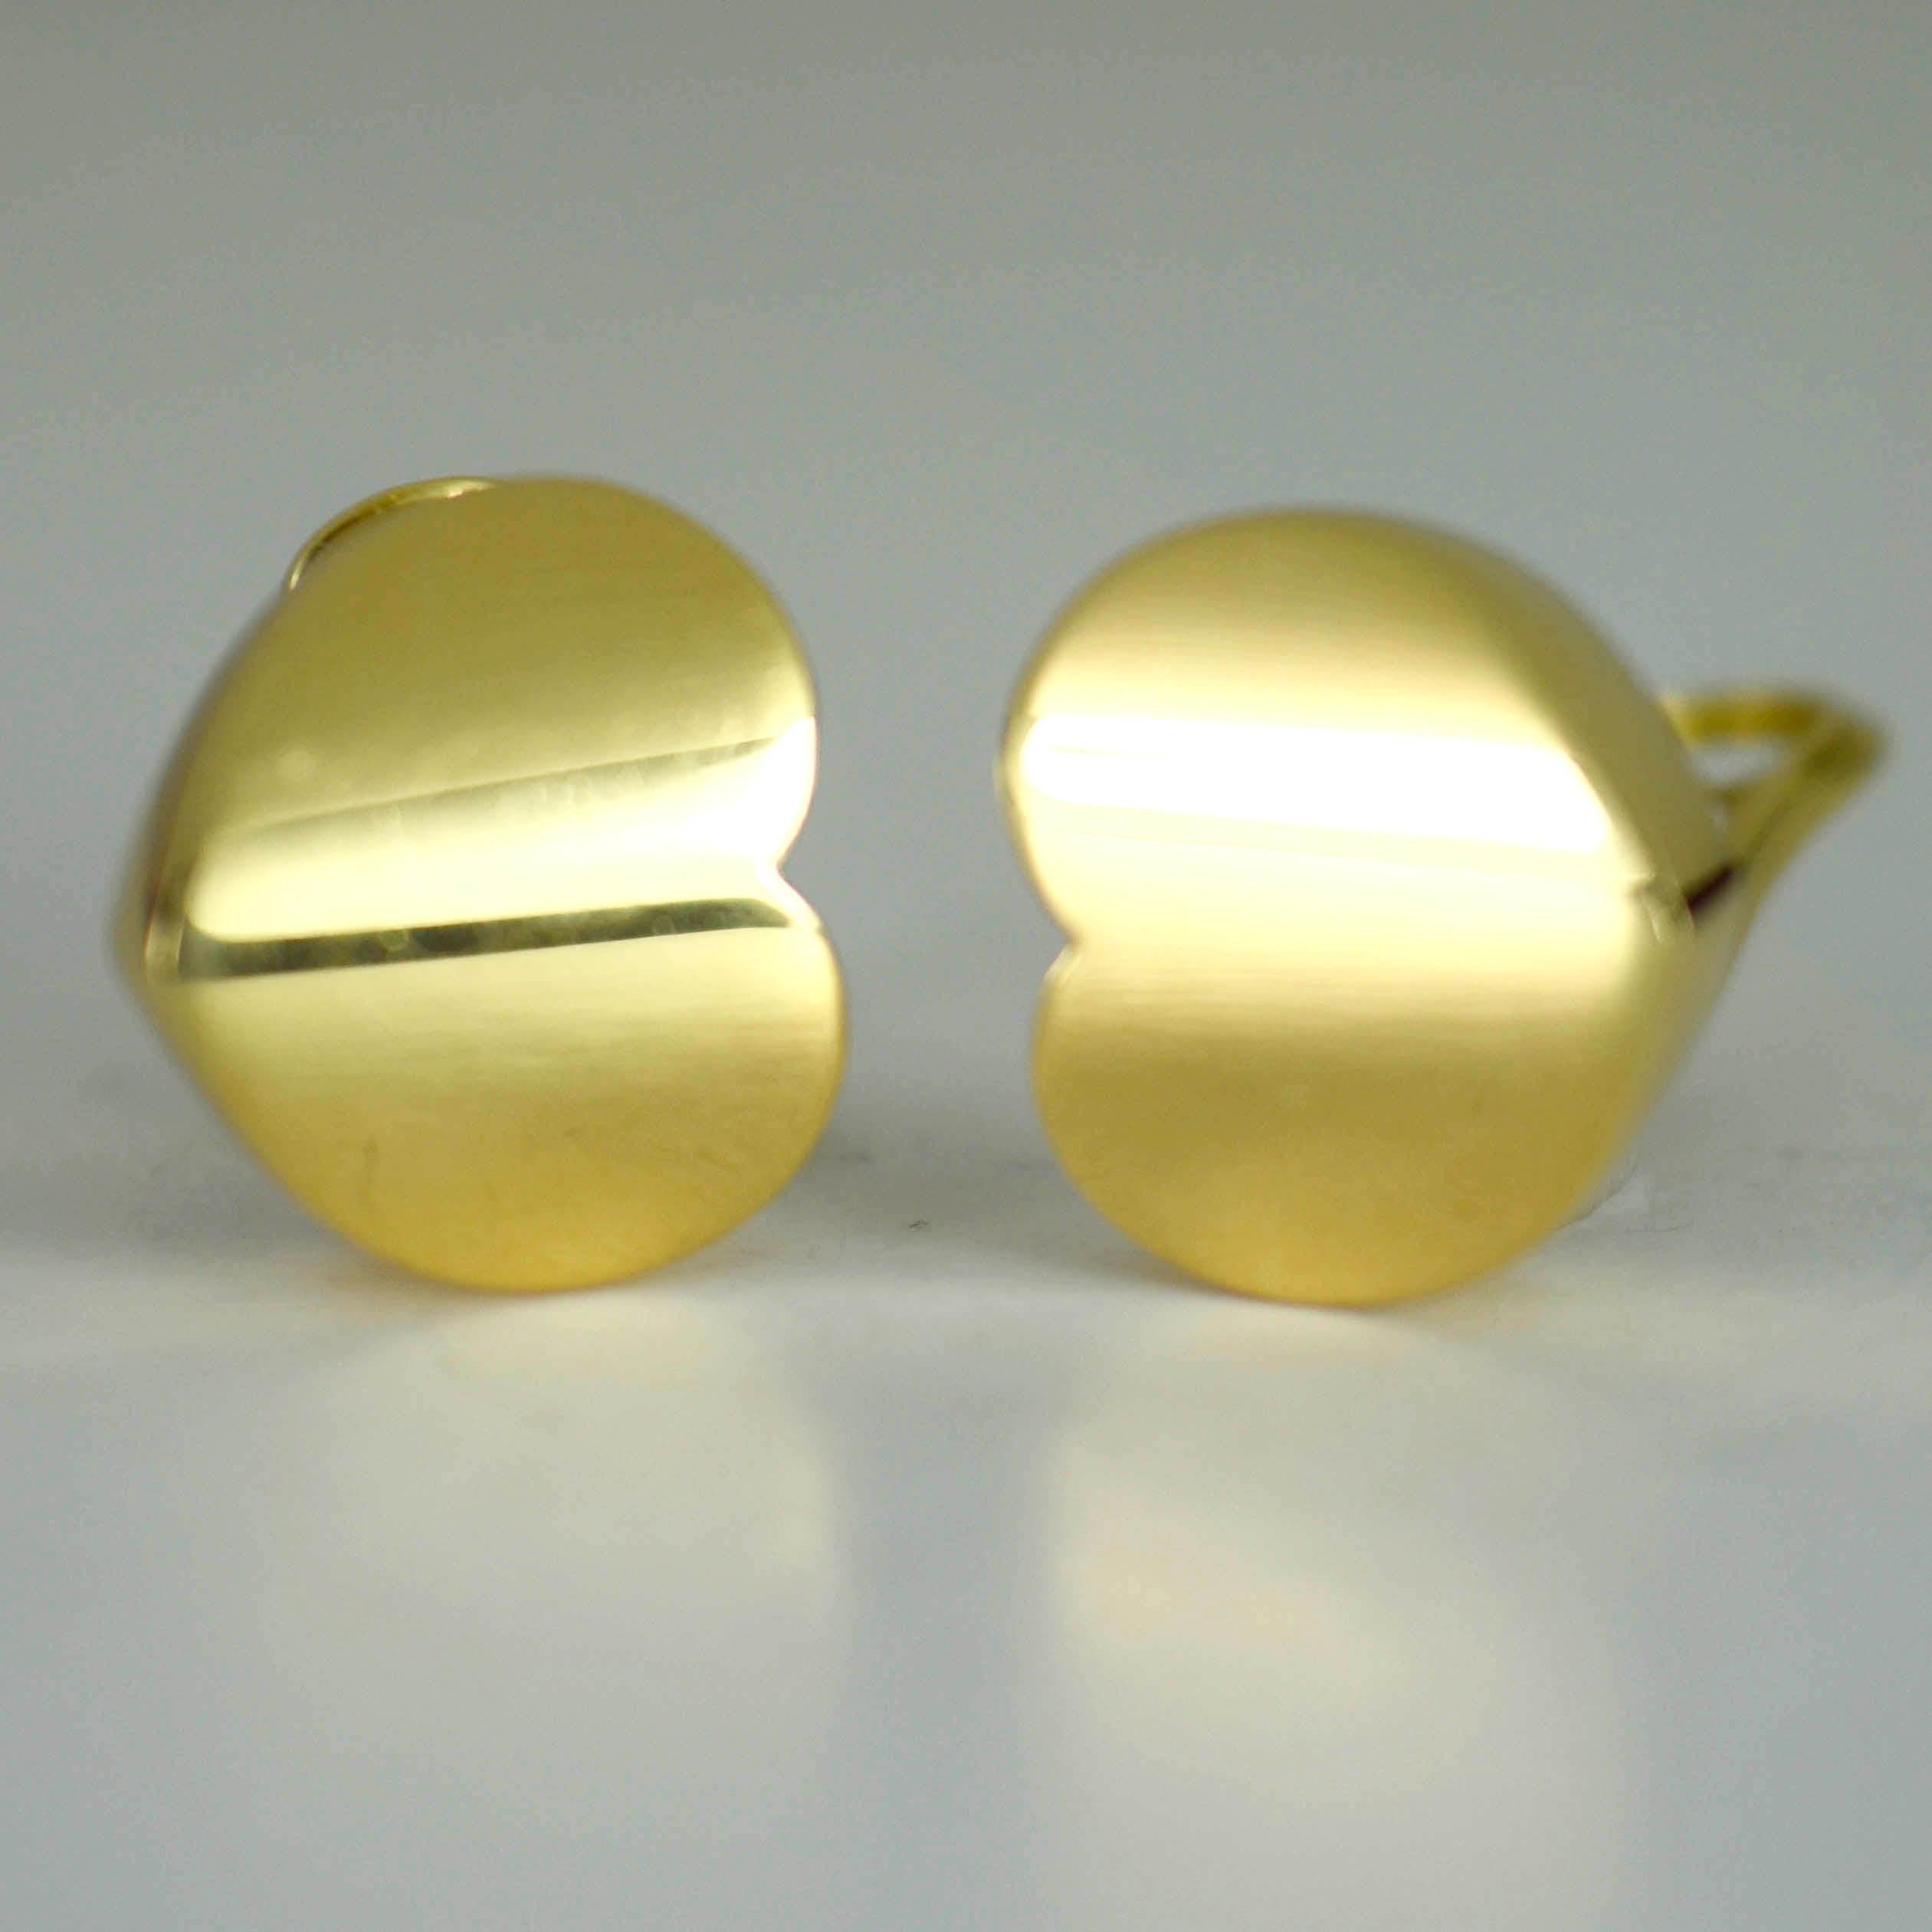 Ein Paar Ohrclips aus 18 Karat Gelbgold von Marina B in Form eines Herzens, das seitlich an jedem Ohr getragen wird. Die Ohrringe sind mit 